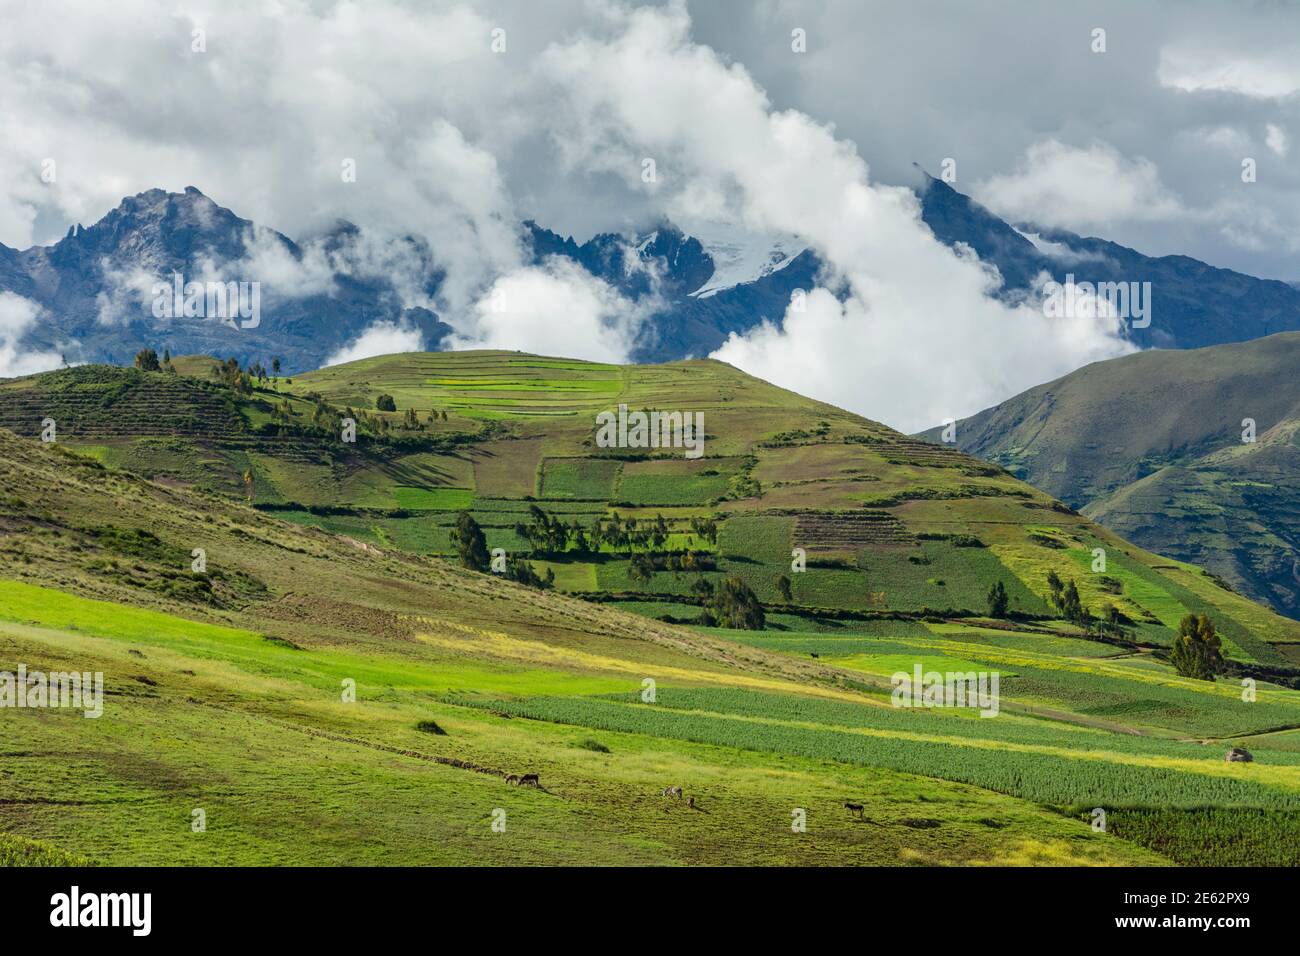 Campi agricoli intorno al villaggio di Moray e le Ande montagne che si innalzano sopra la Valle Sacra, Perù. Foto Stock